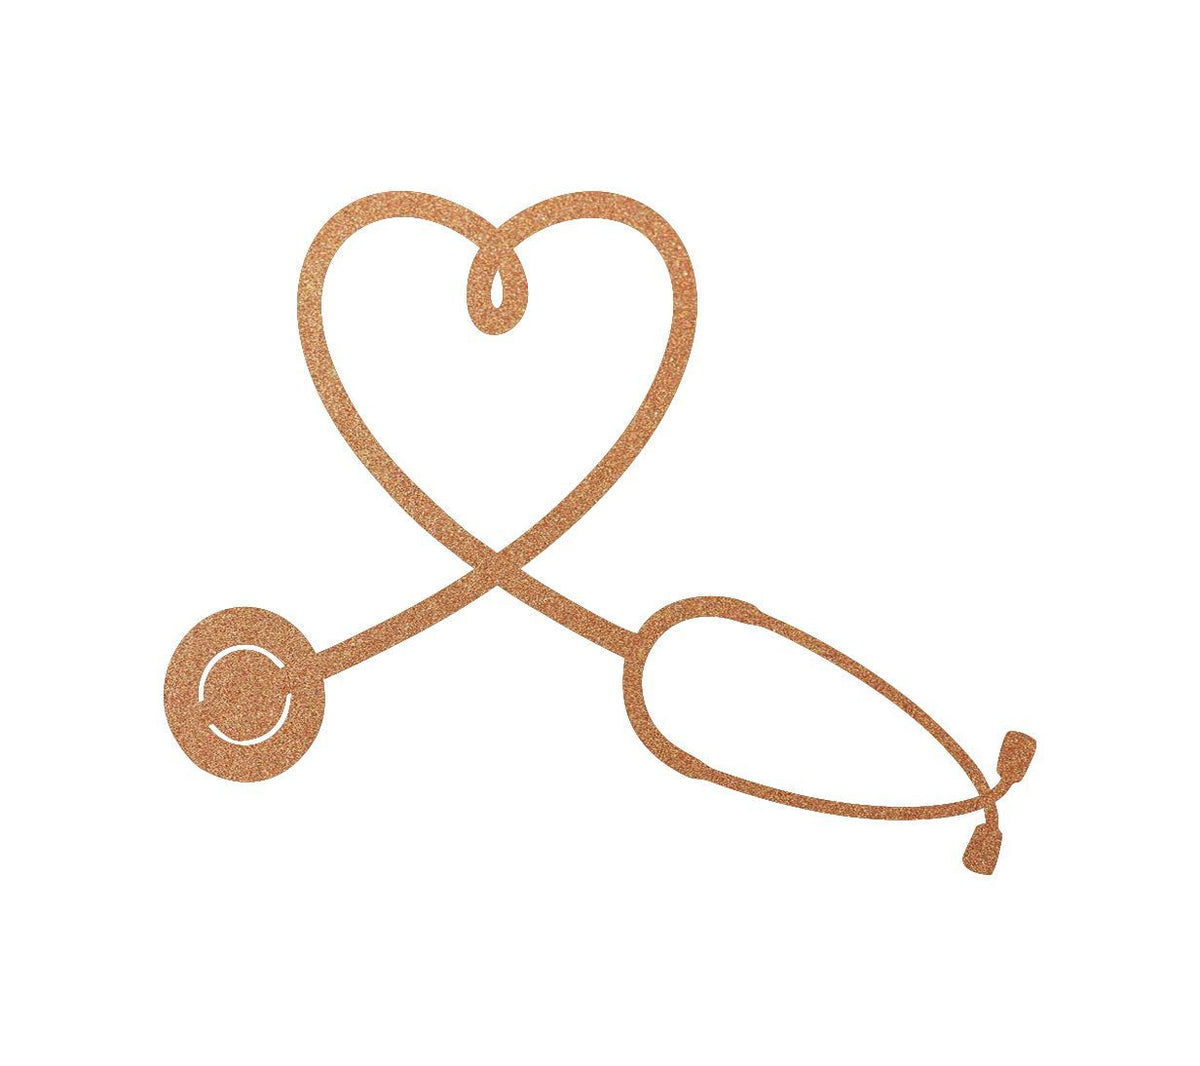 Stethoscope Heart Wall Art